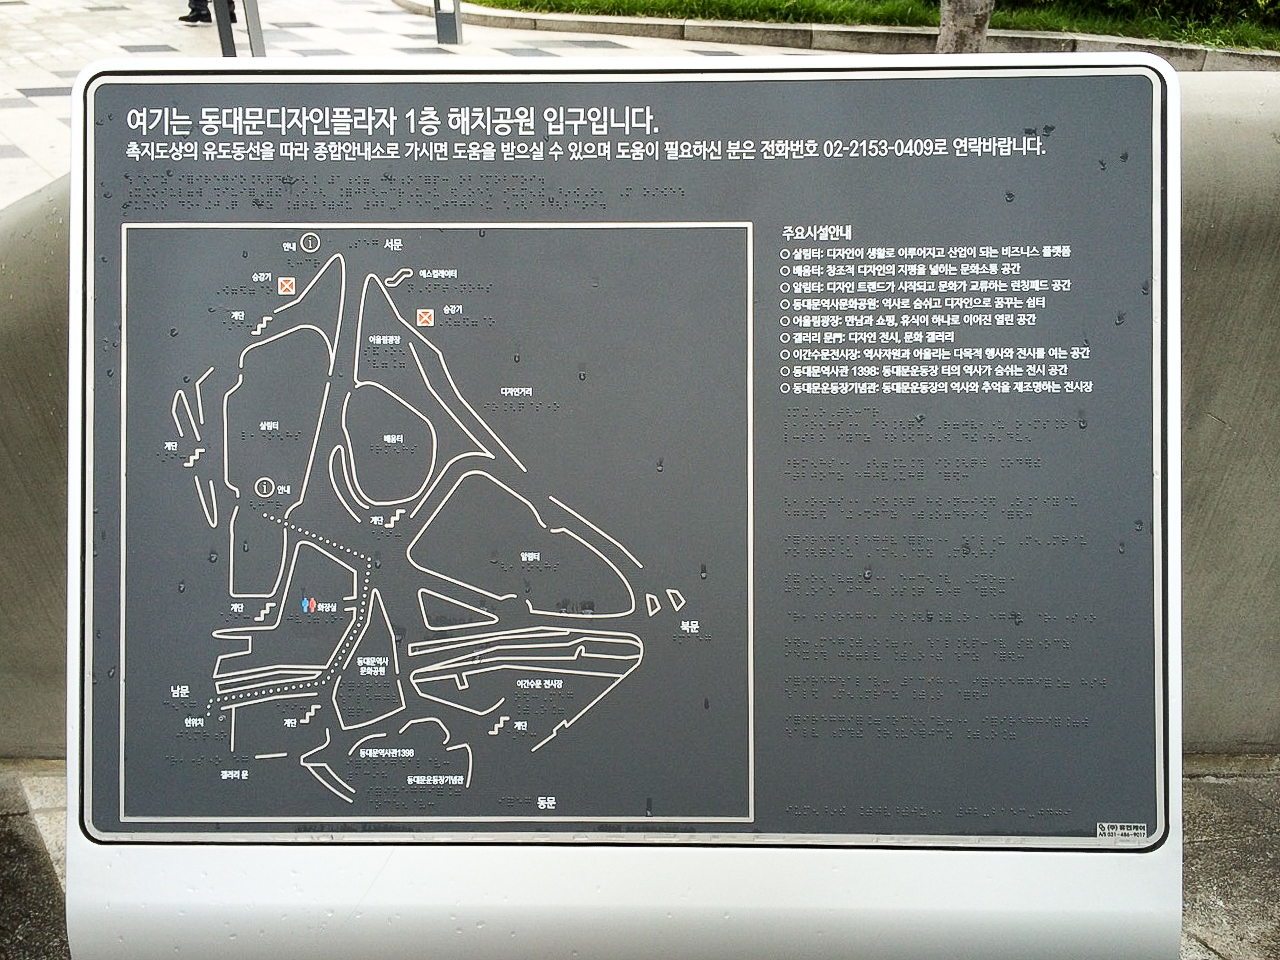 Заметки о Корее: Стенд со шрифтом Брайля